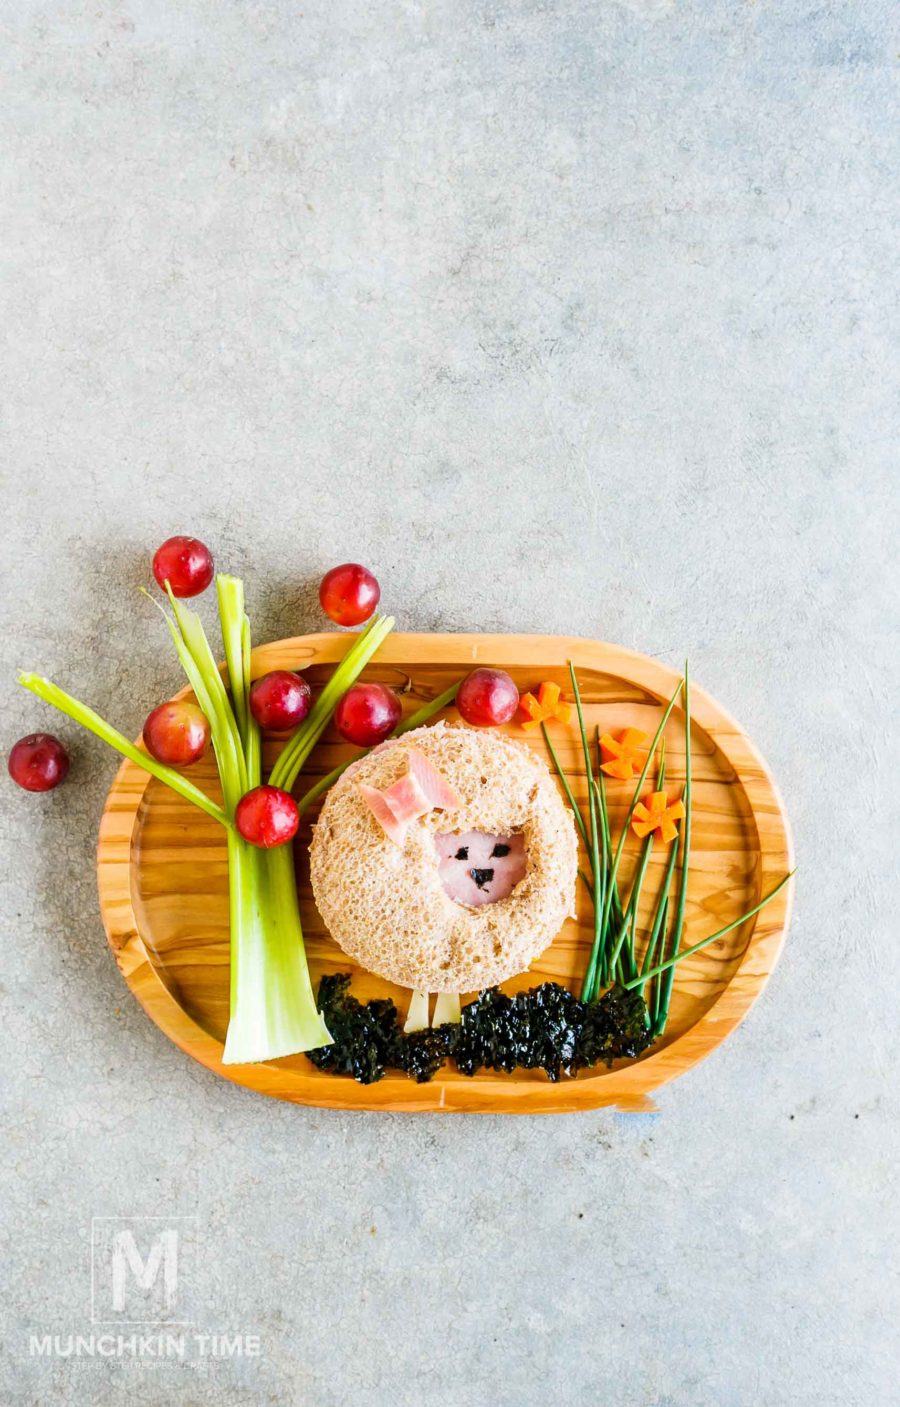 5 Easy School Lunch Ideas - ham sandwich that looks like sheep.